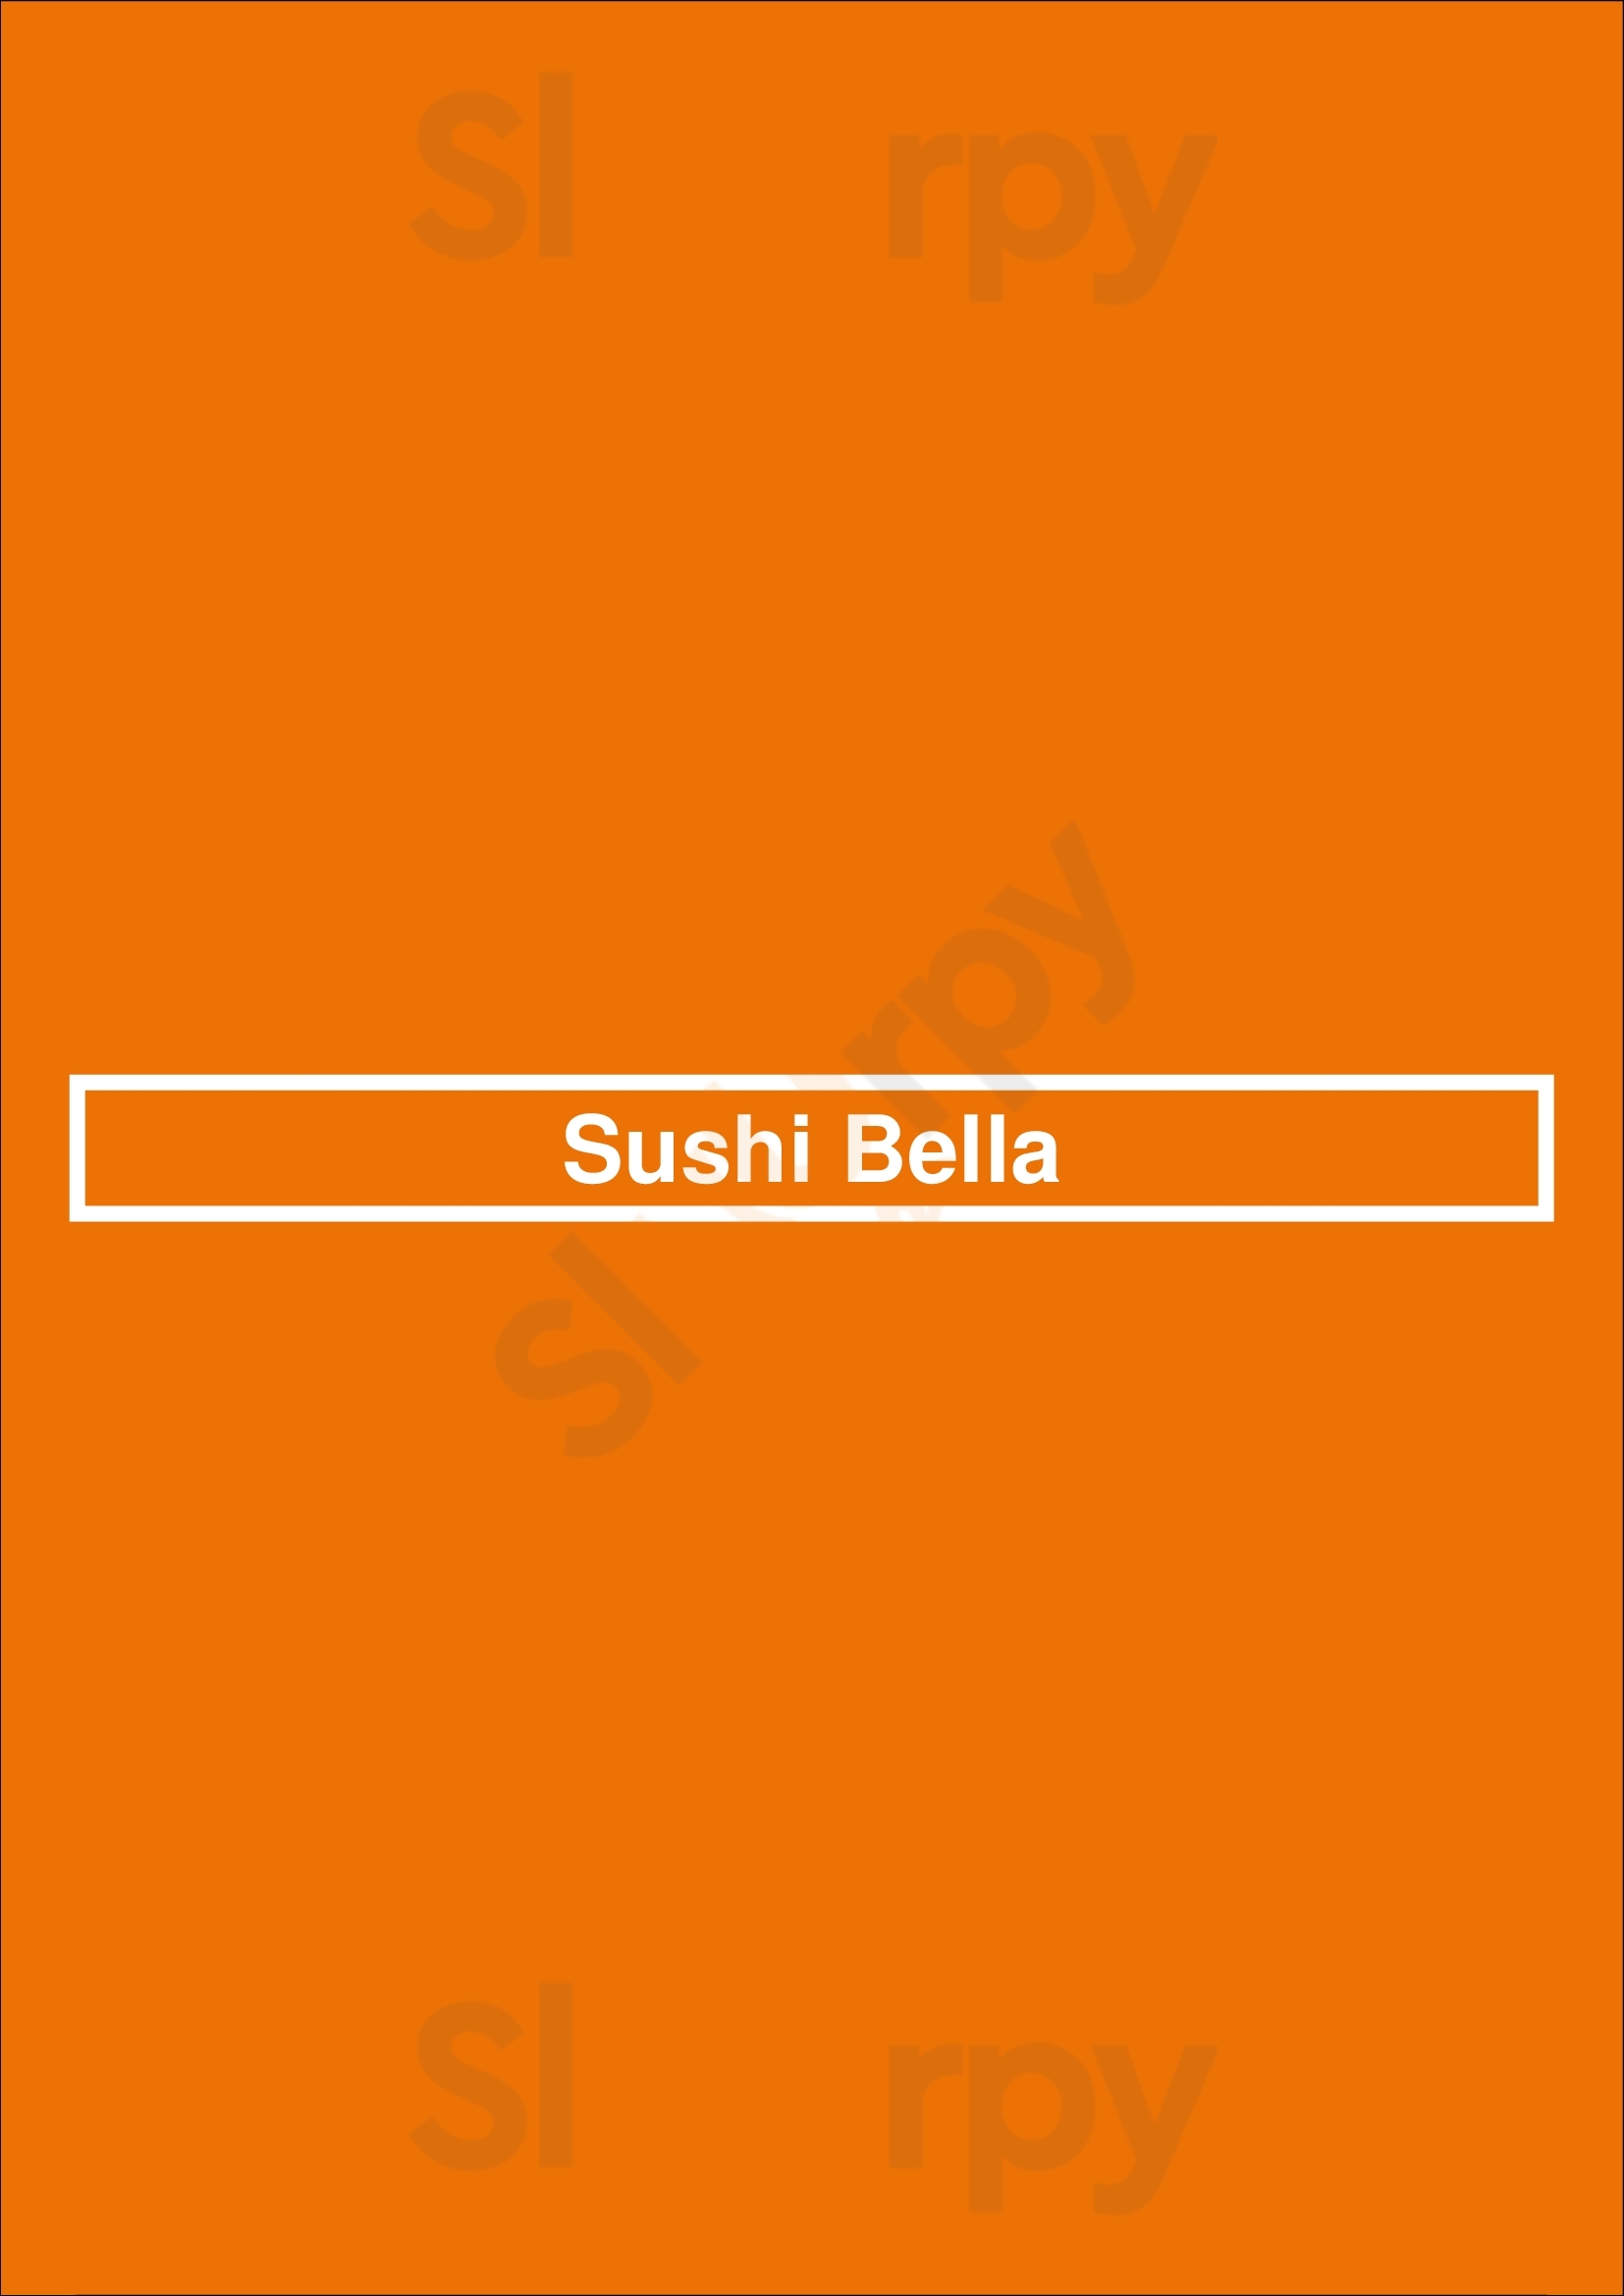 Sushi Bella North Vancouver Menu - 1